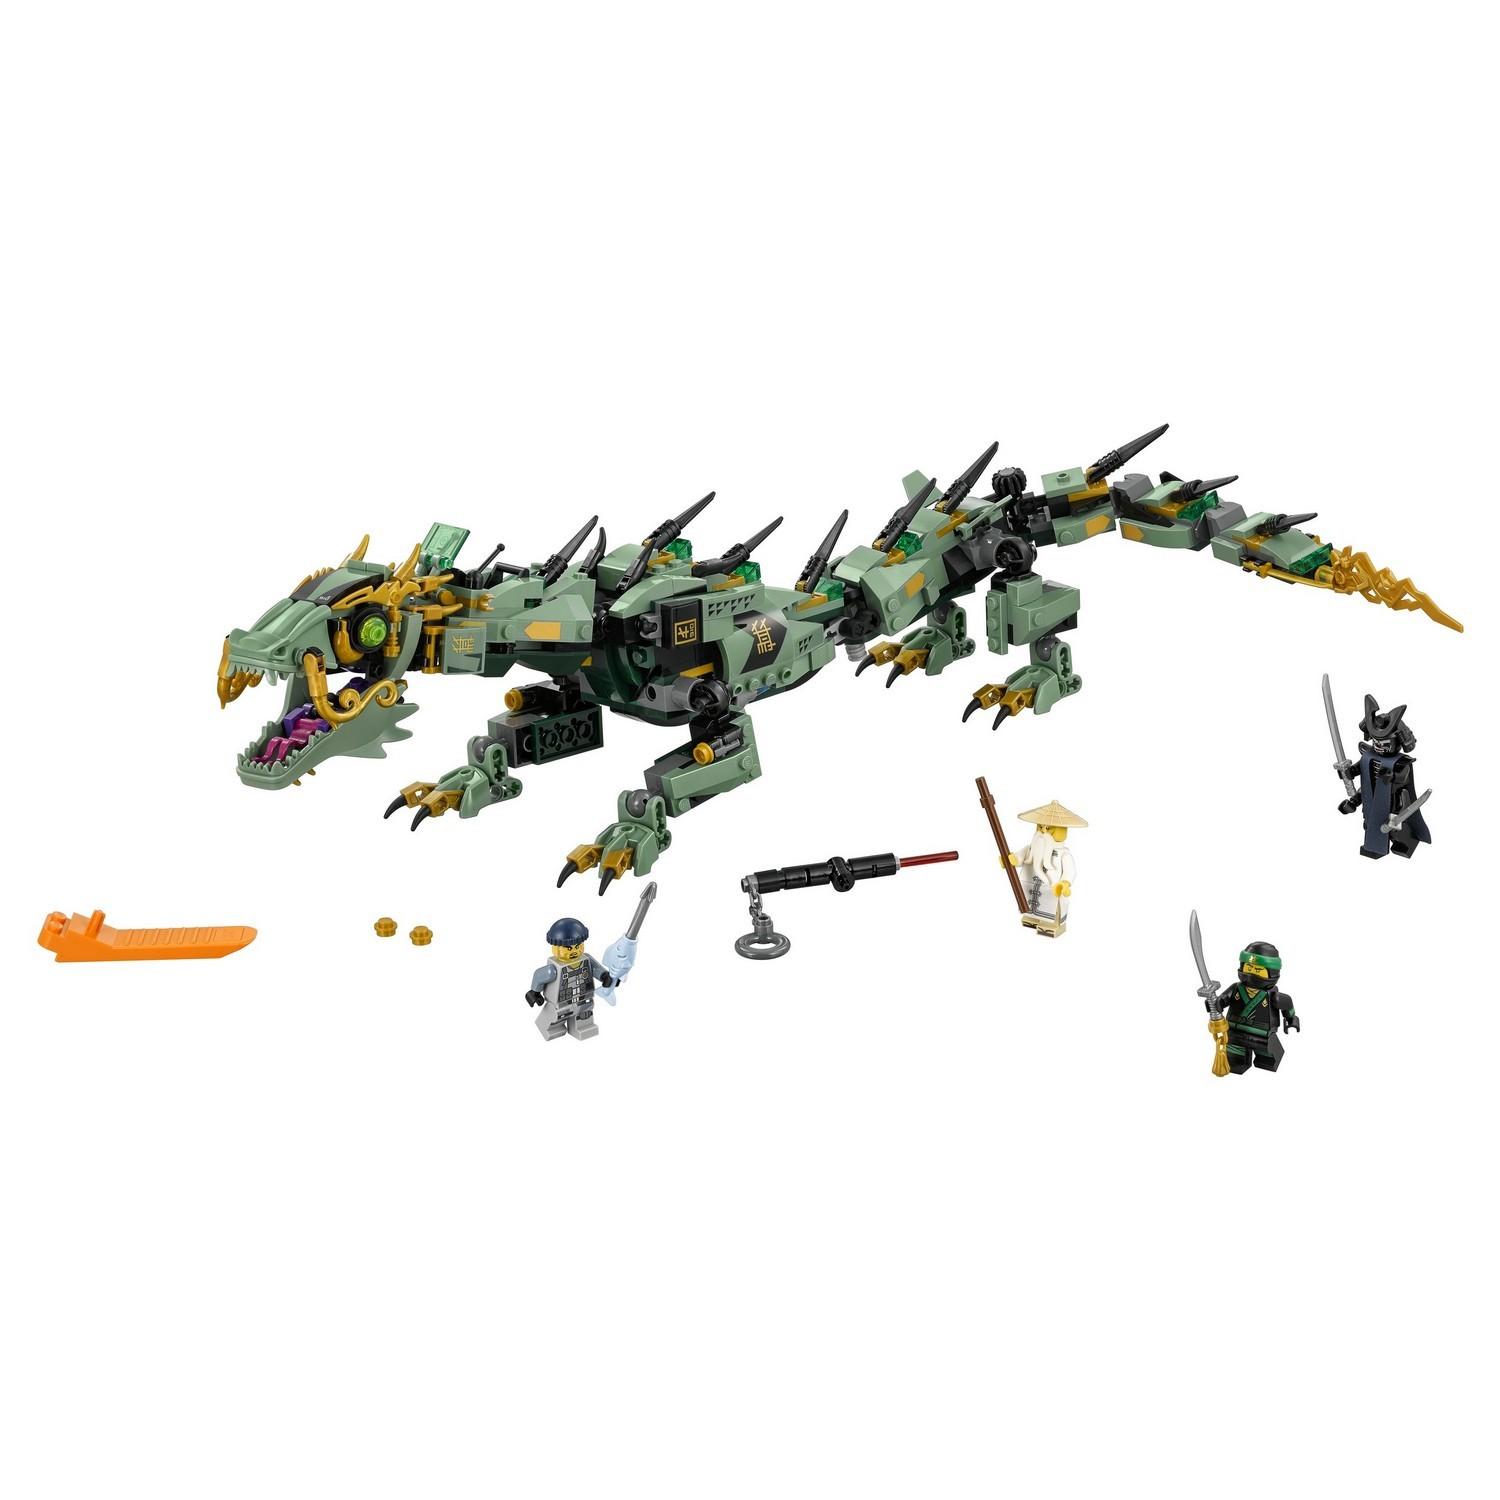 Lego Ninjago 70612 Механический Дракон Зелёного Ниндзя